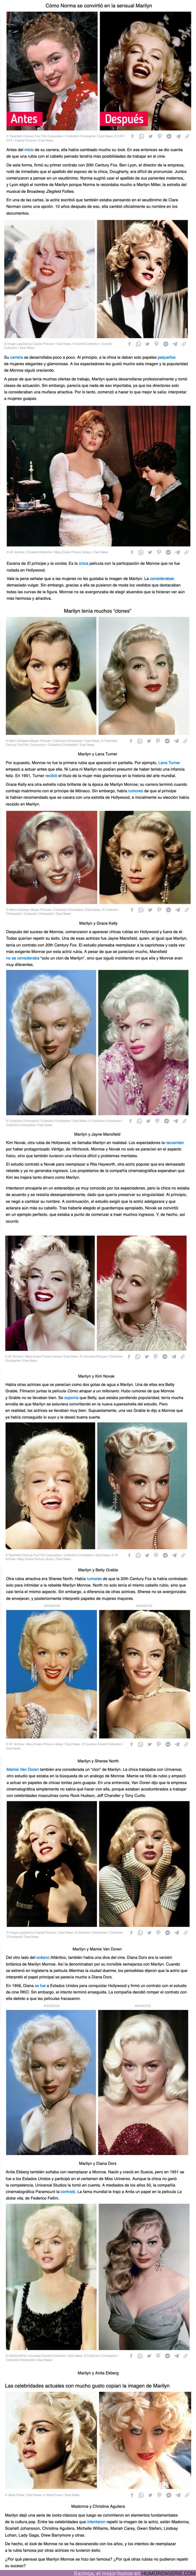 98895 - GALERÍA: Por qué Marilyn Monroe enloquecía a los espectadores, aunque había muchas otras actrices rubias que se parecían a ella